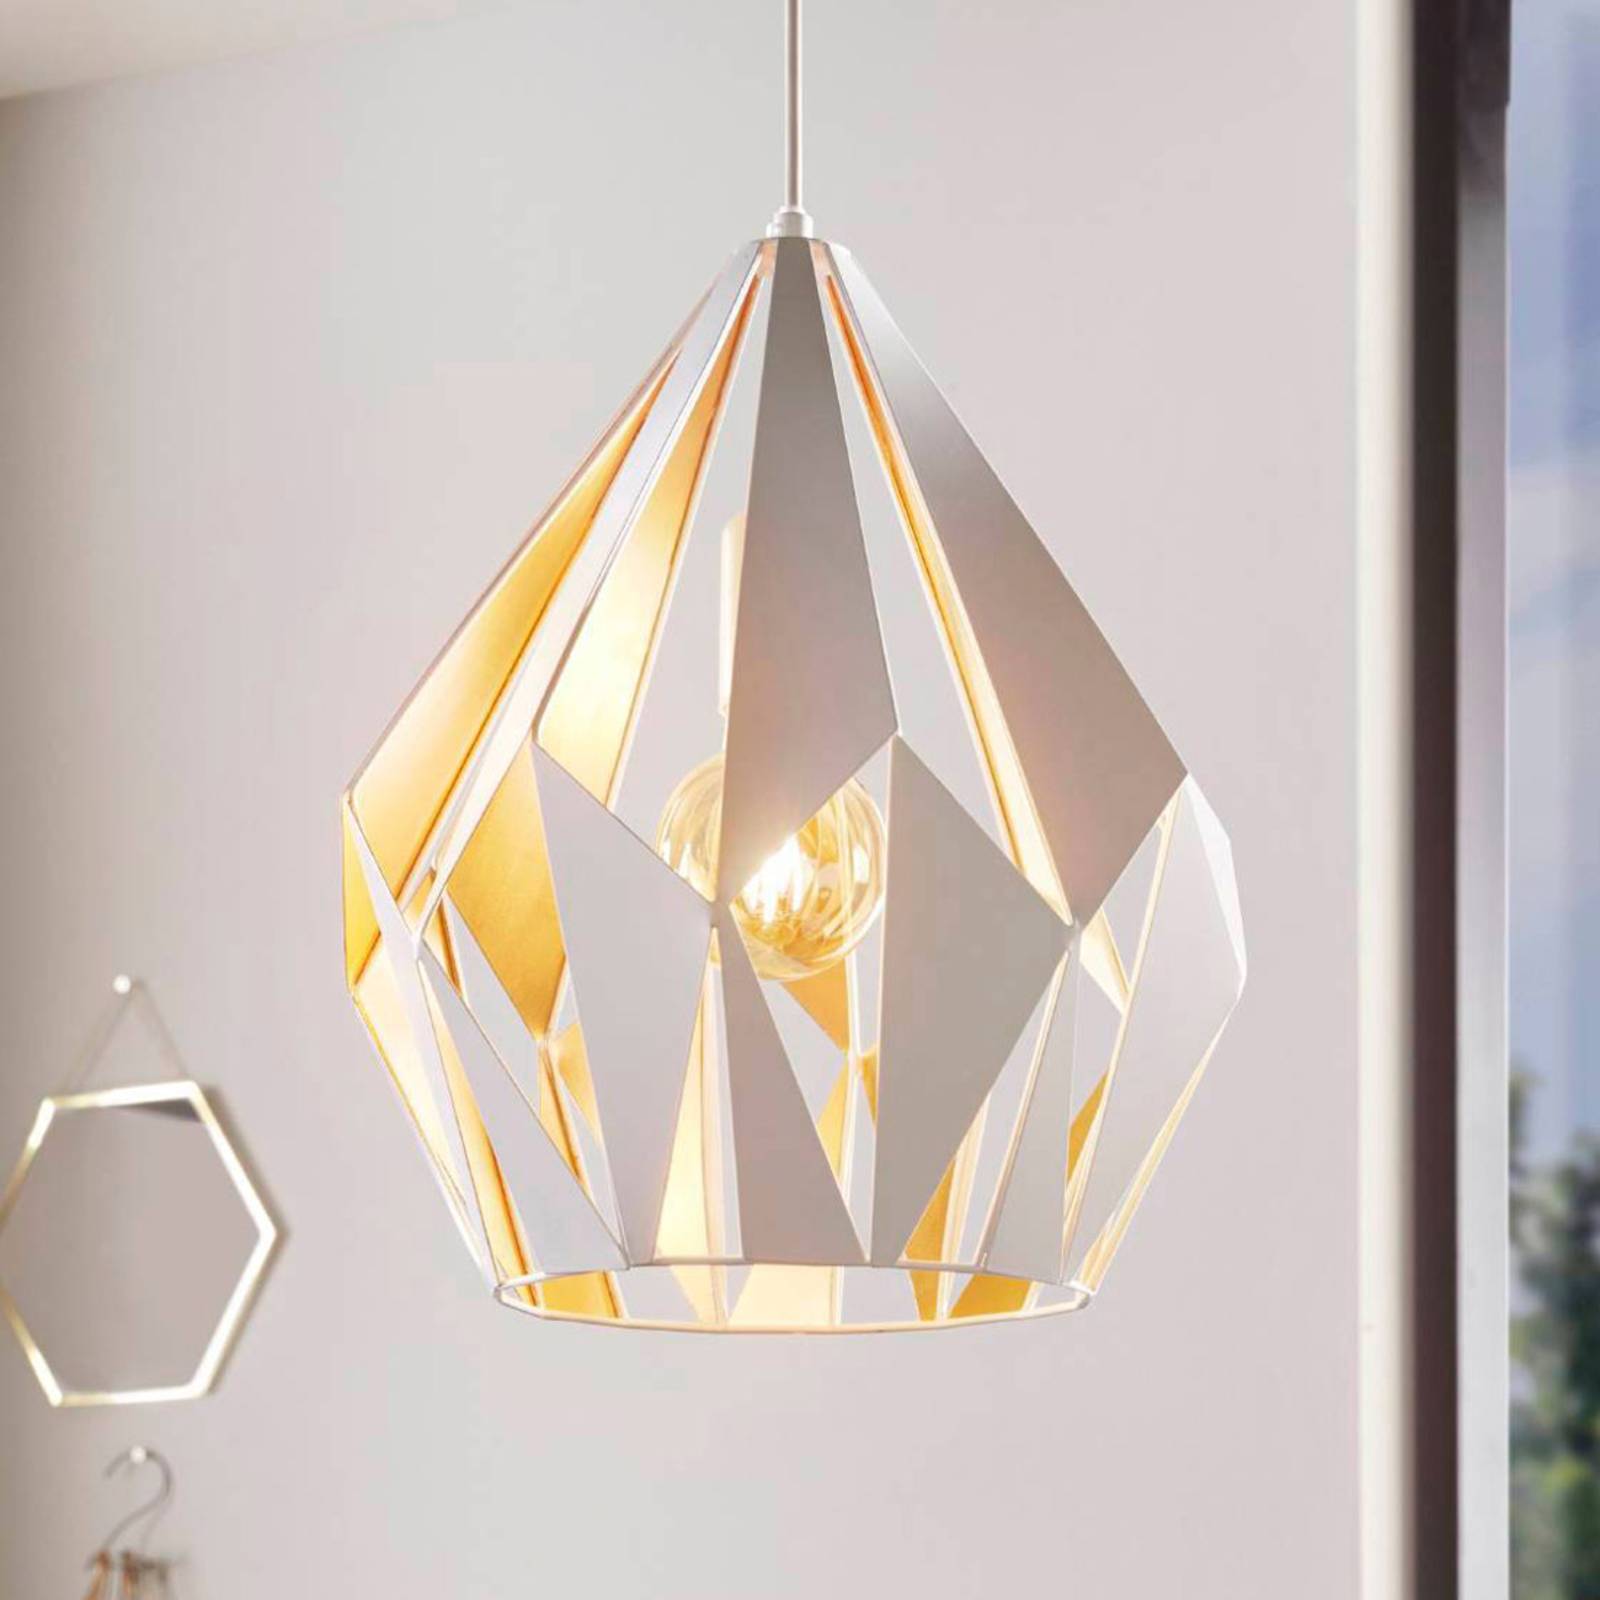 Eglo carlton függő lámpa, fehér-arany, ø 31 cm